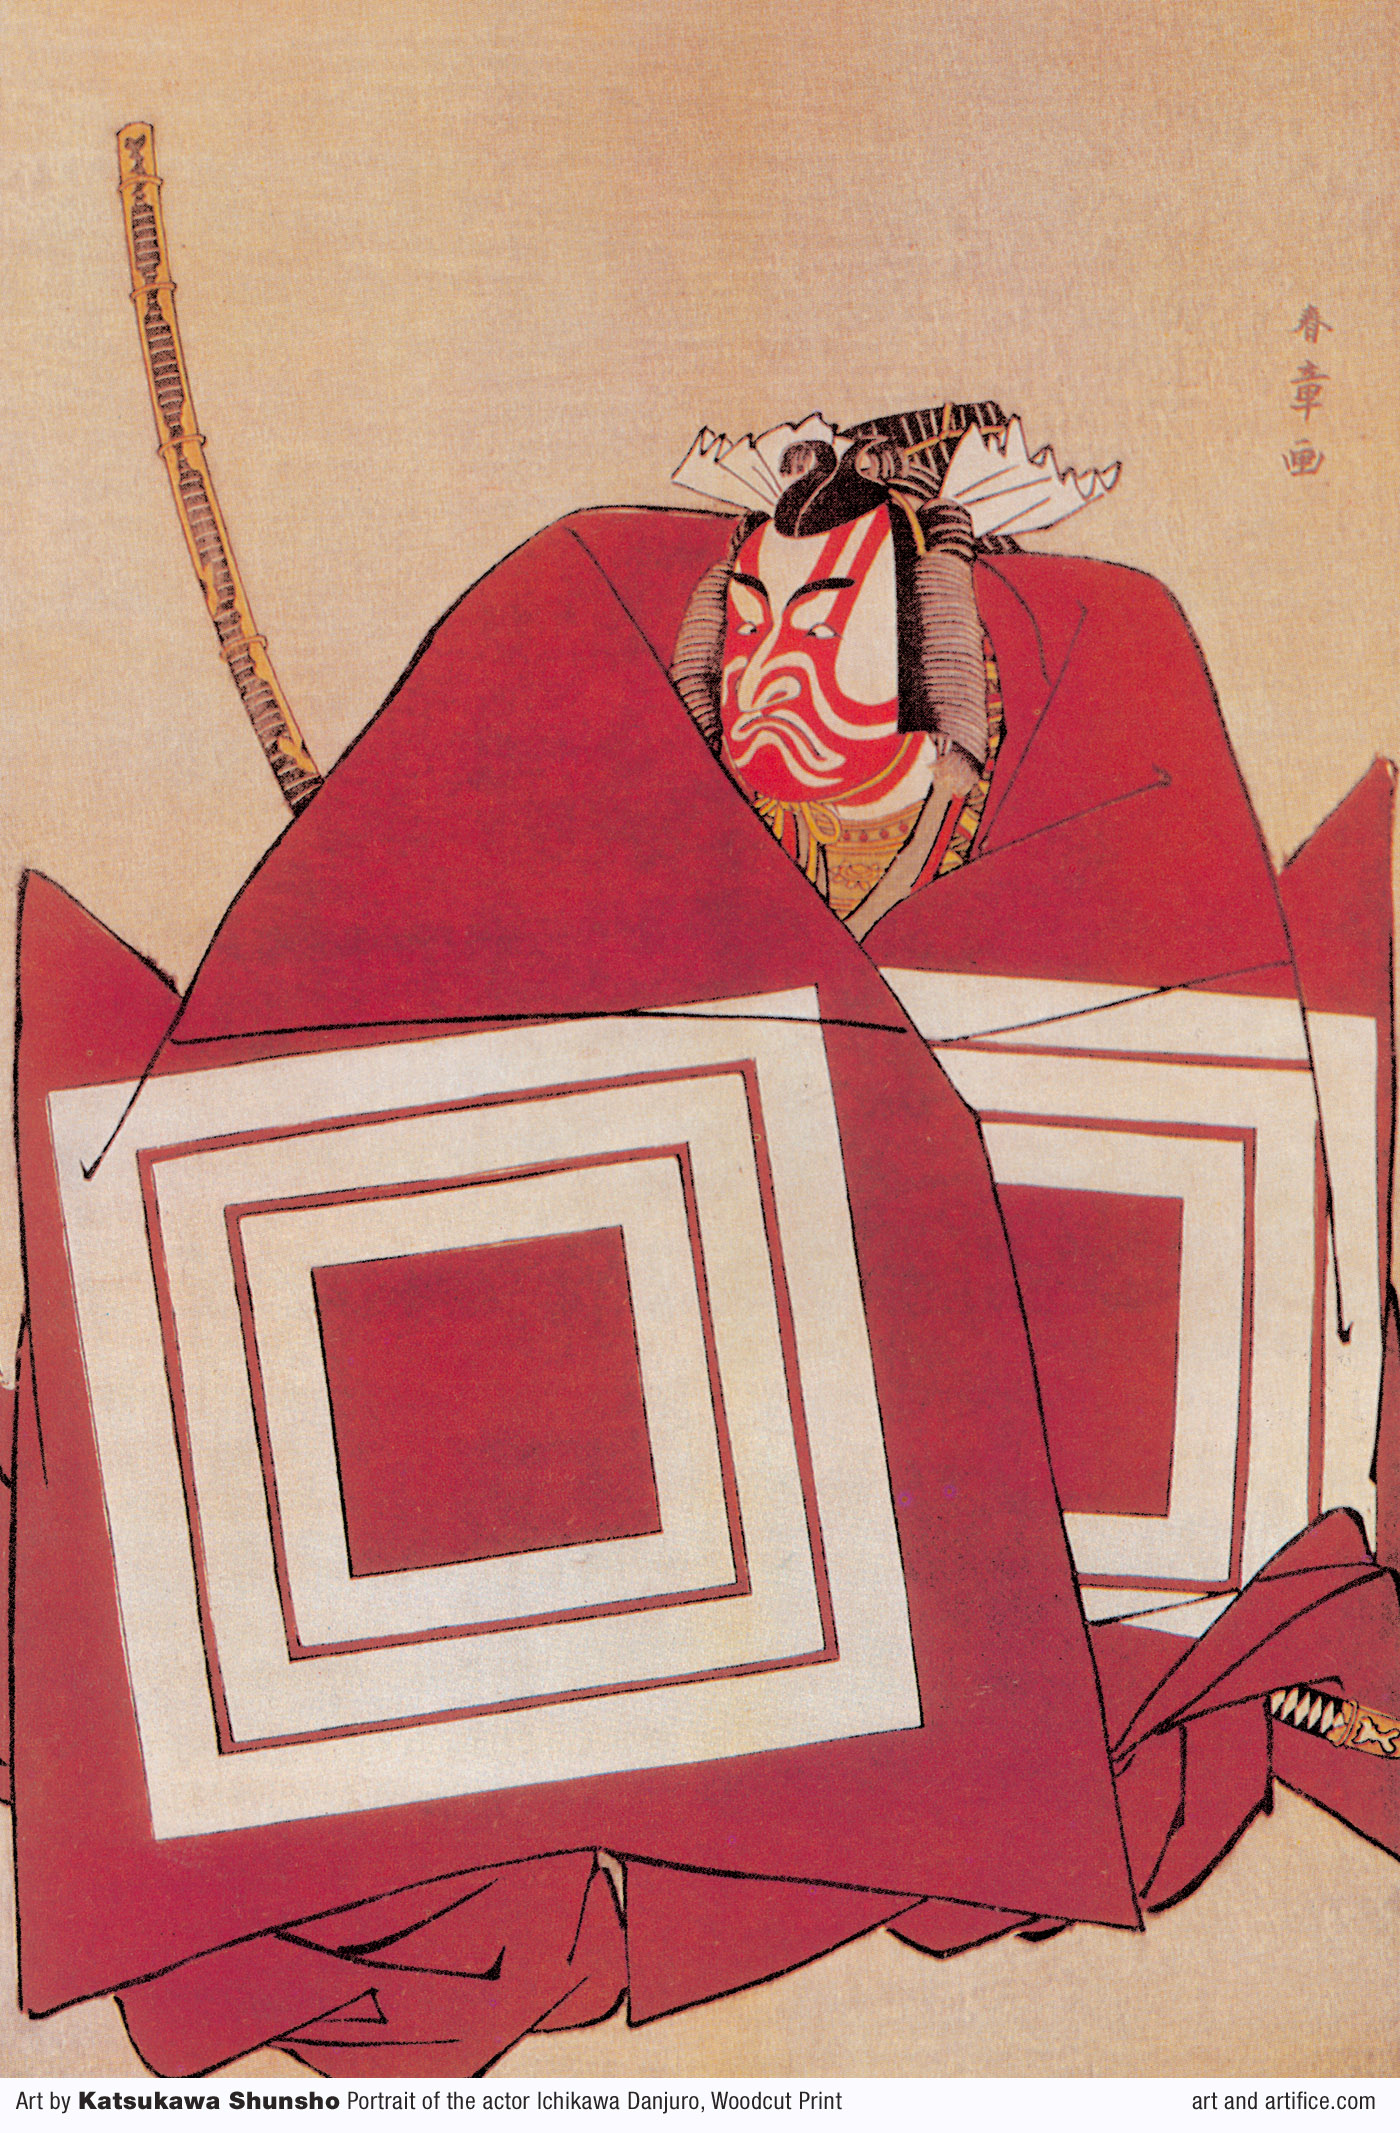 Katsukawa Shunsho - 1726 - January 19, 1793